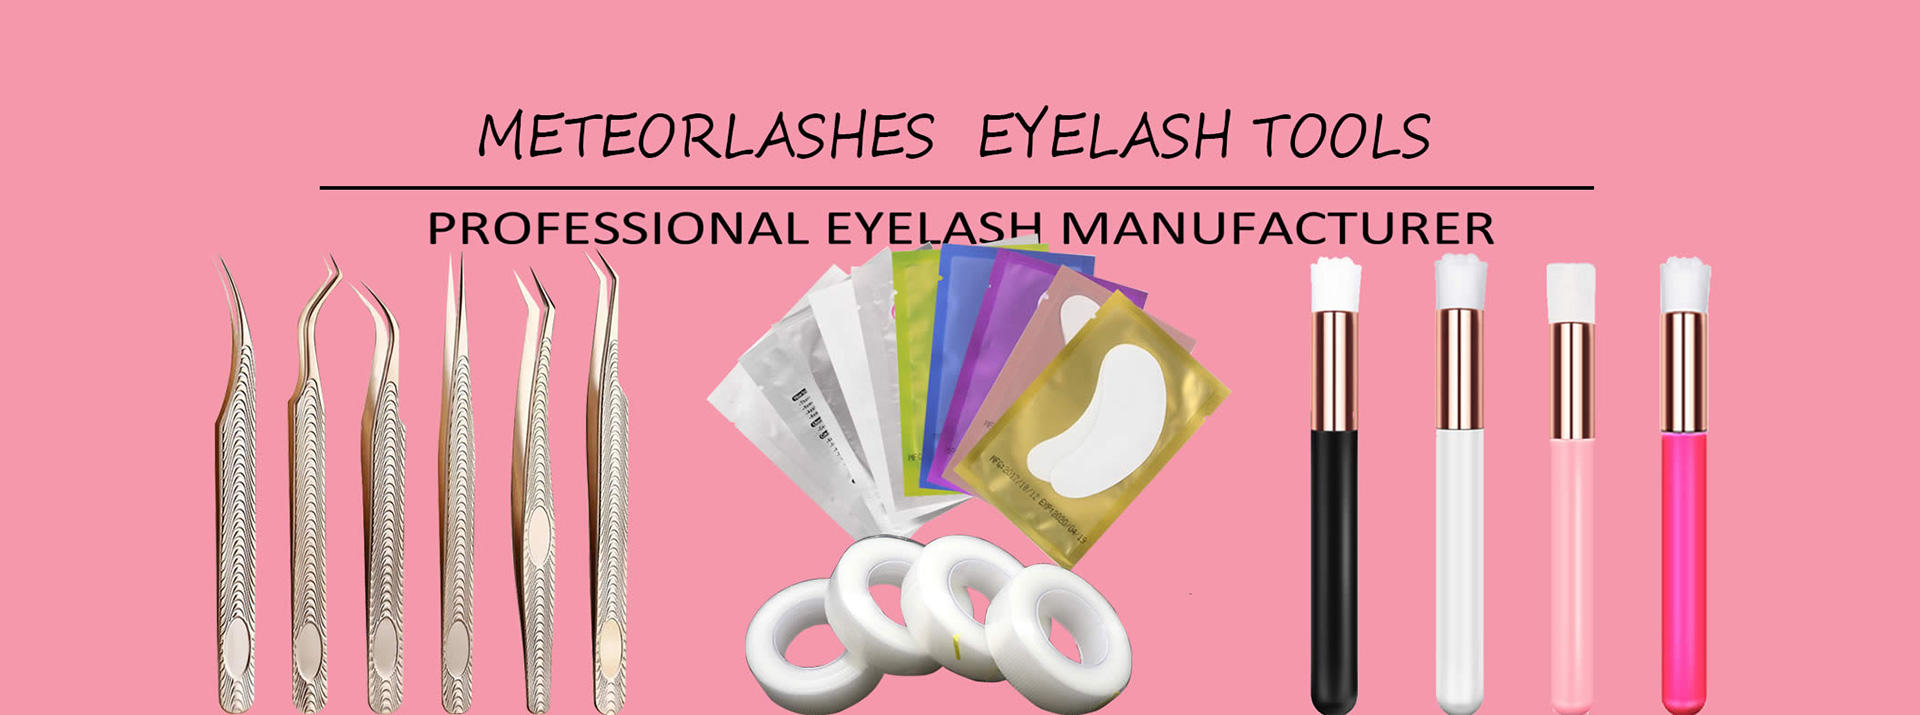 Lisebelisoa tsa Eyelash Extension